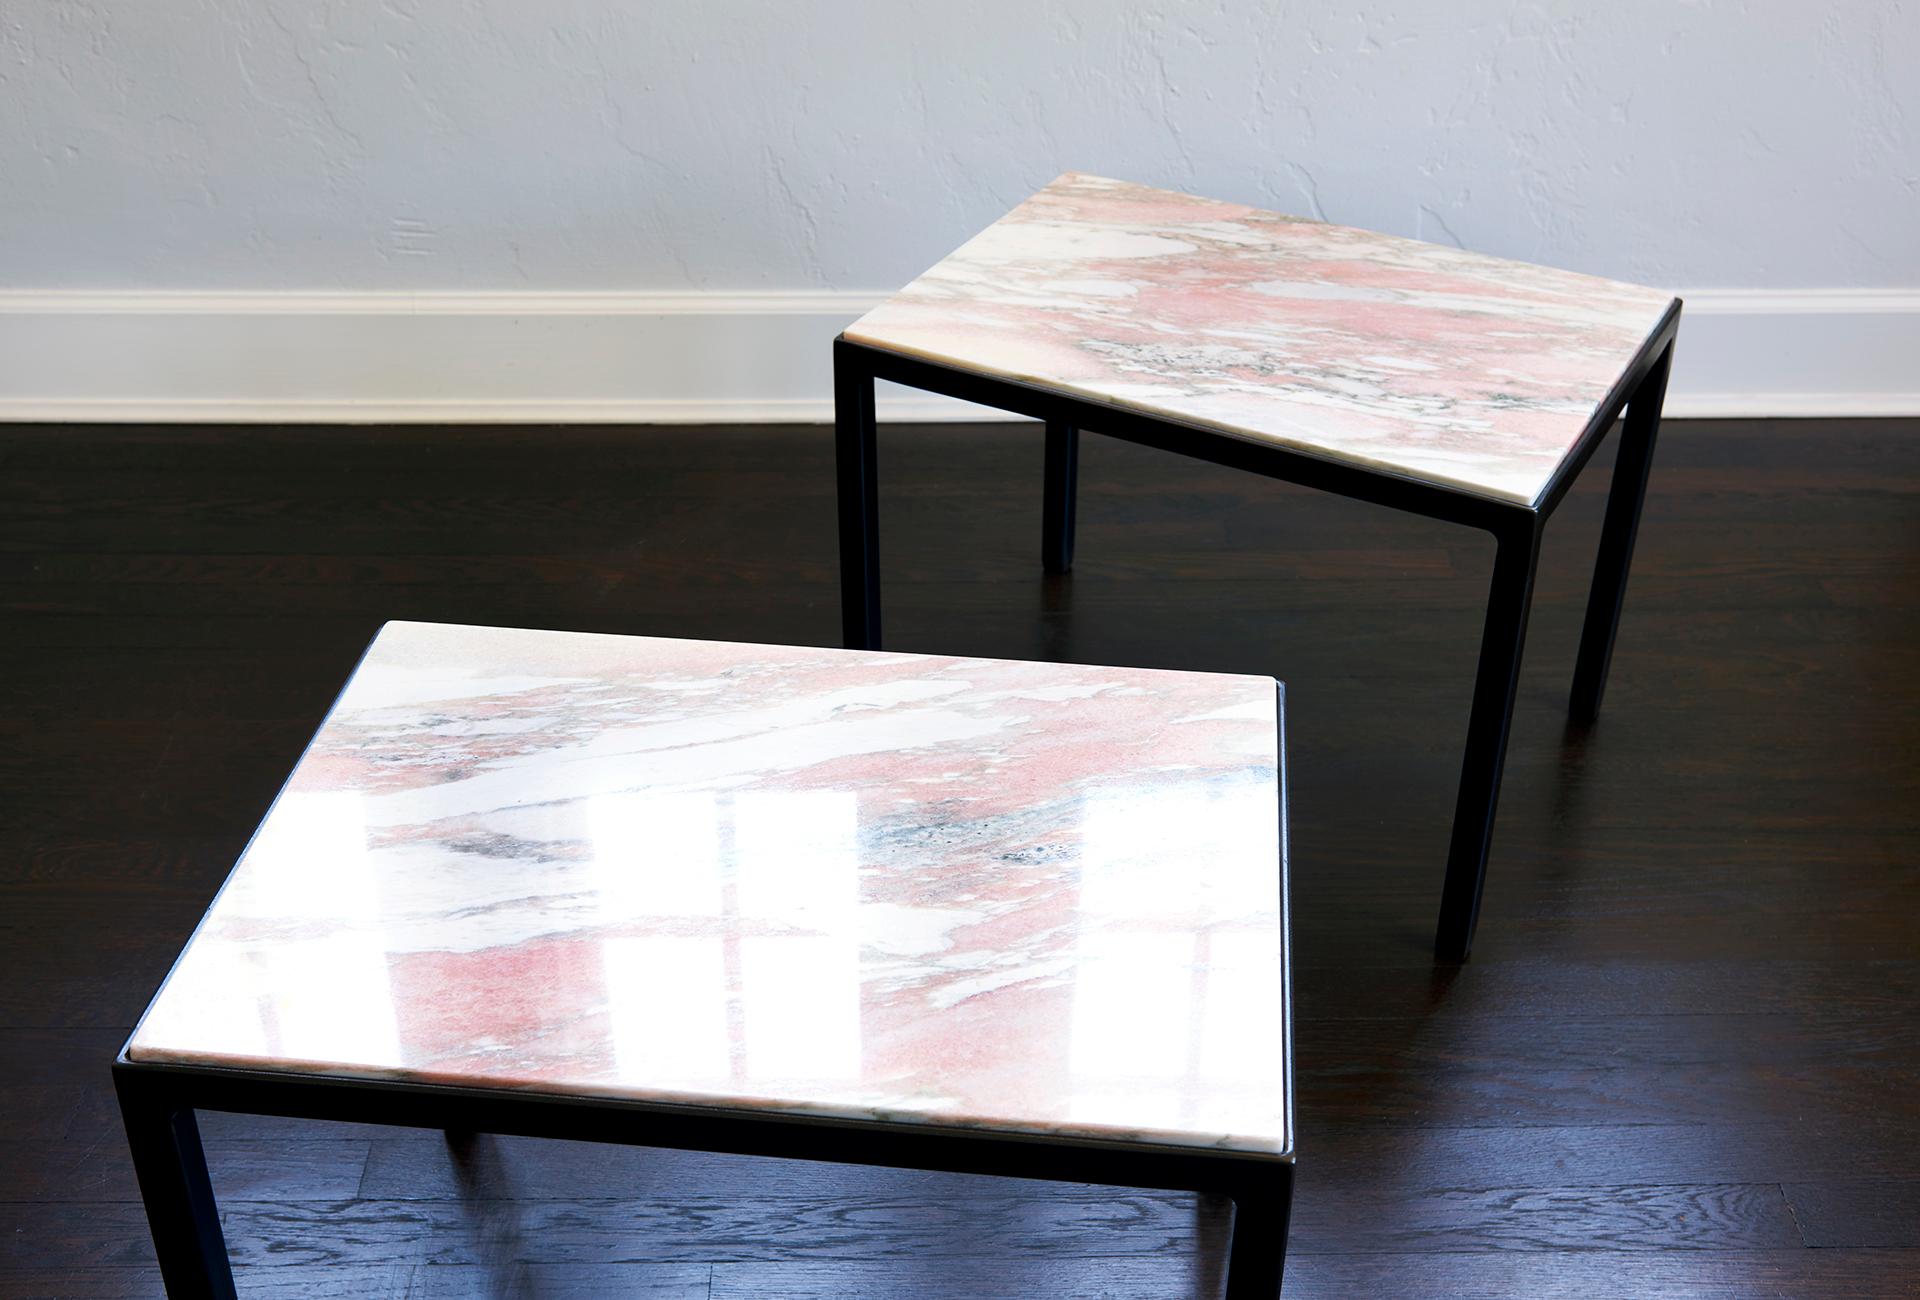 Shizen Studio präsentiert die Pietra Tables, entworfen von India Foster. Diese Tische werden aus wiedergewonnenem Marmor und recyceltem Stahl hergestellt. Die polierte Steinplatte ist mit Kork unterlegt und steht auf einem geschwärzten Stahlrahmen.